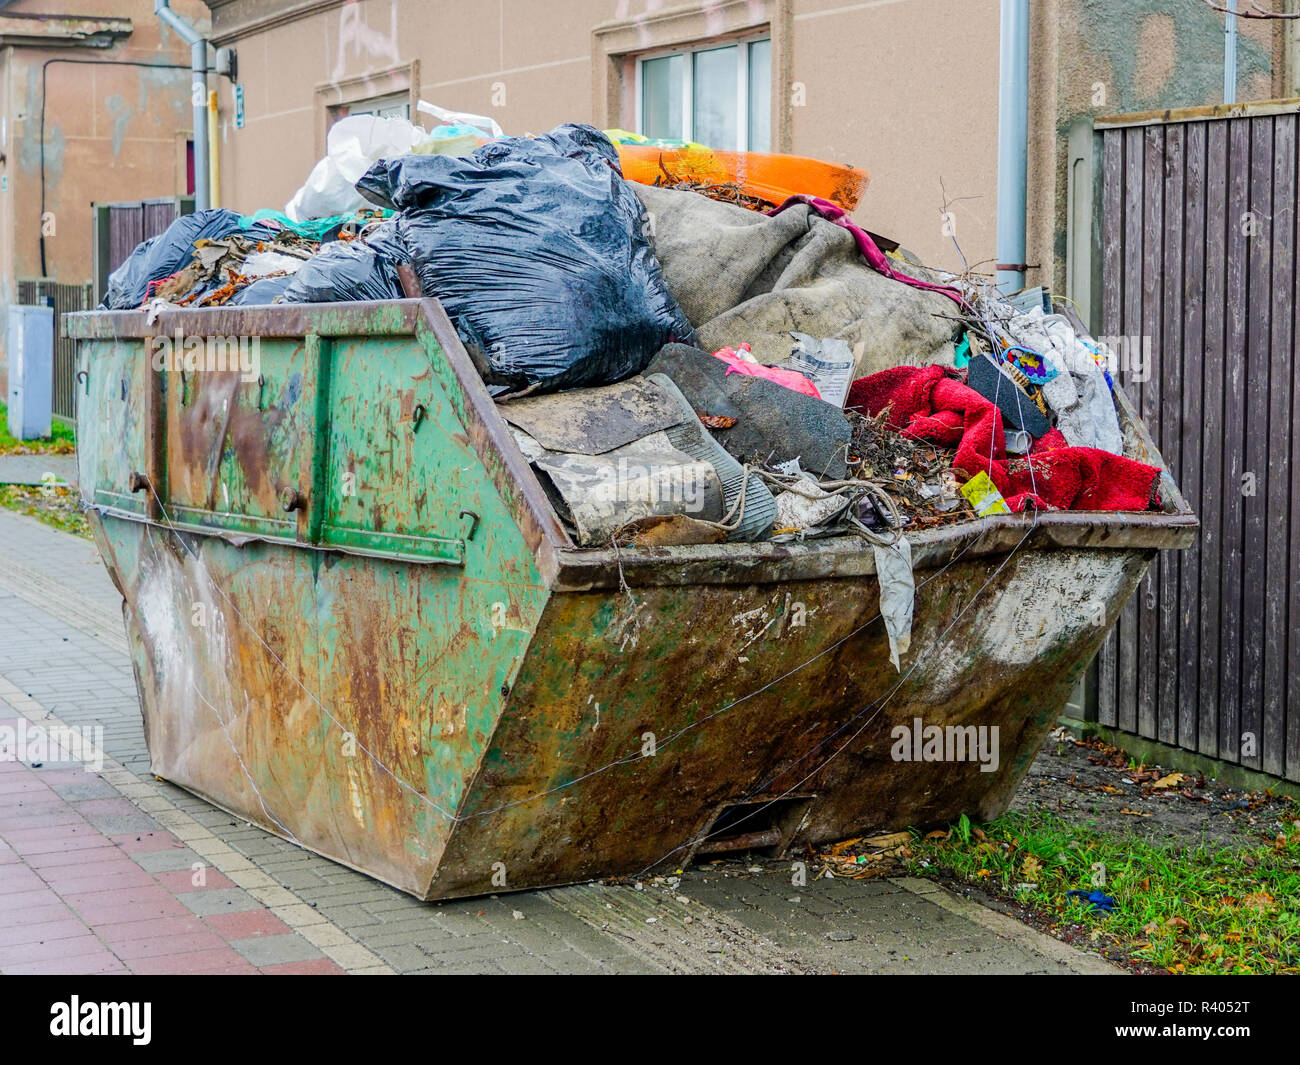 Un grand récipient en métal sale sur la rue de la ville, plein de déchets  Photo Stock - Alamy